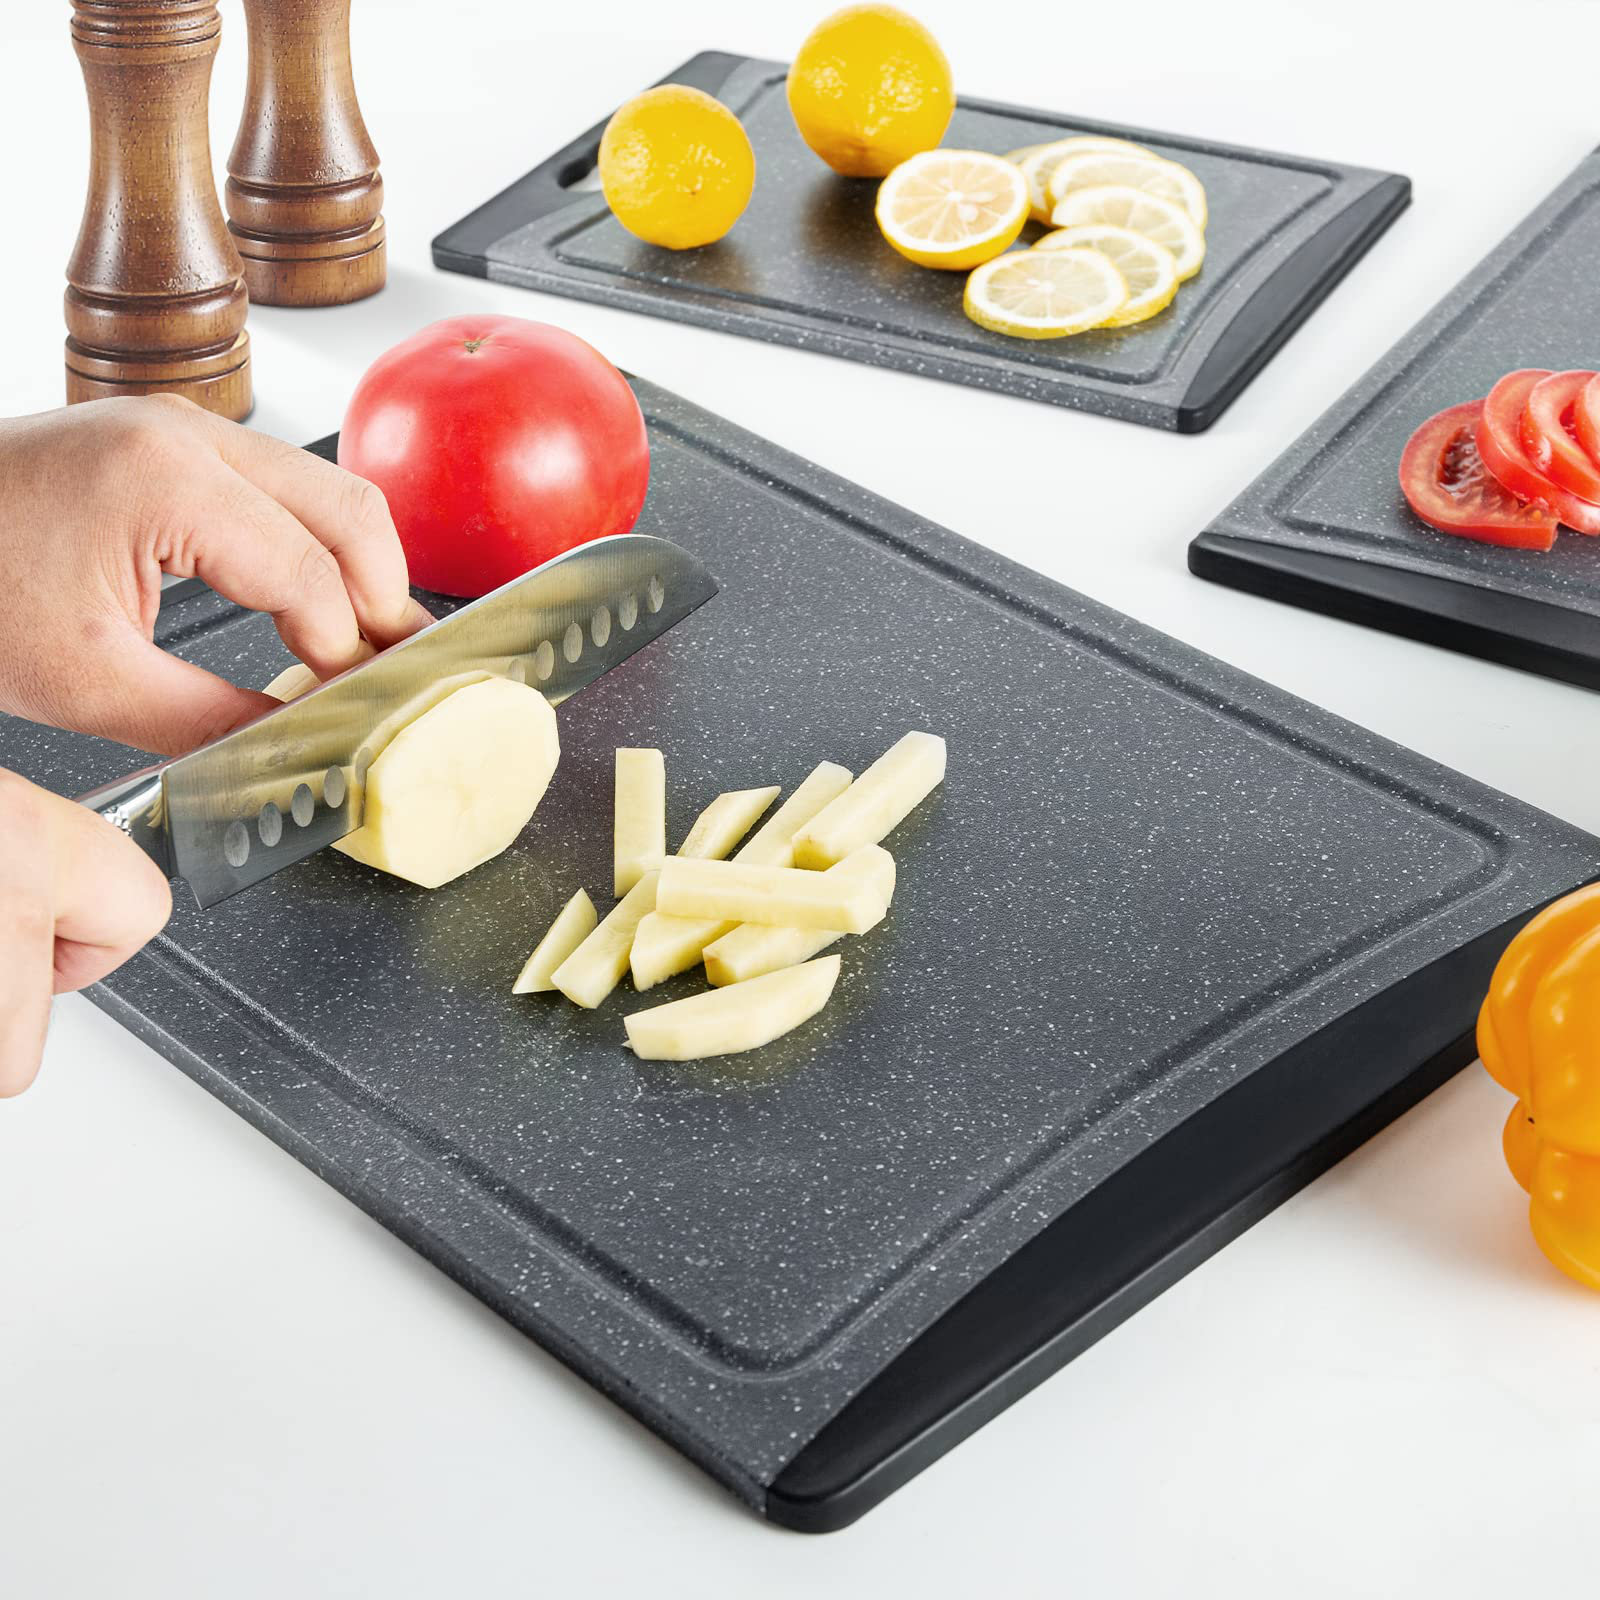  HENCKELS Cutting Board Set, 3pc, Grey: Home & Kitchen